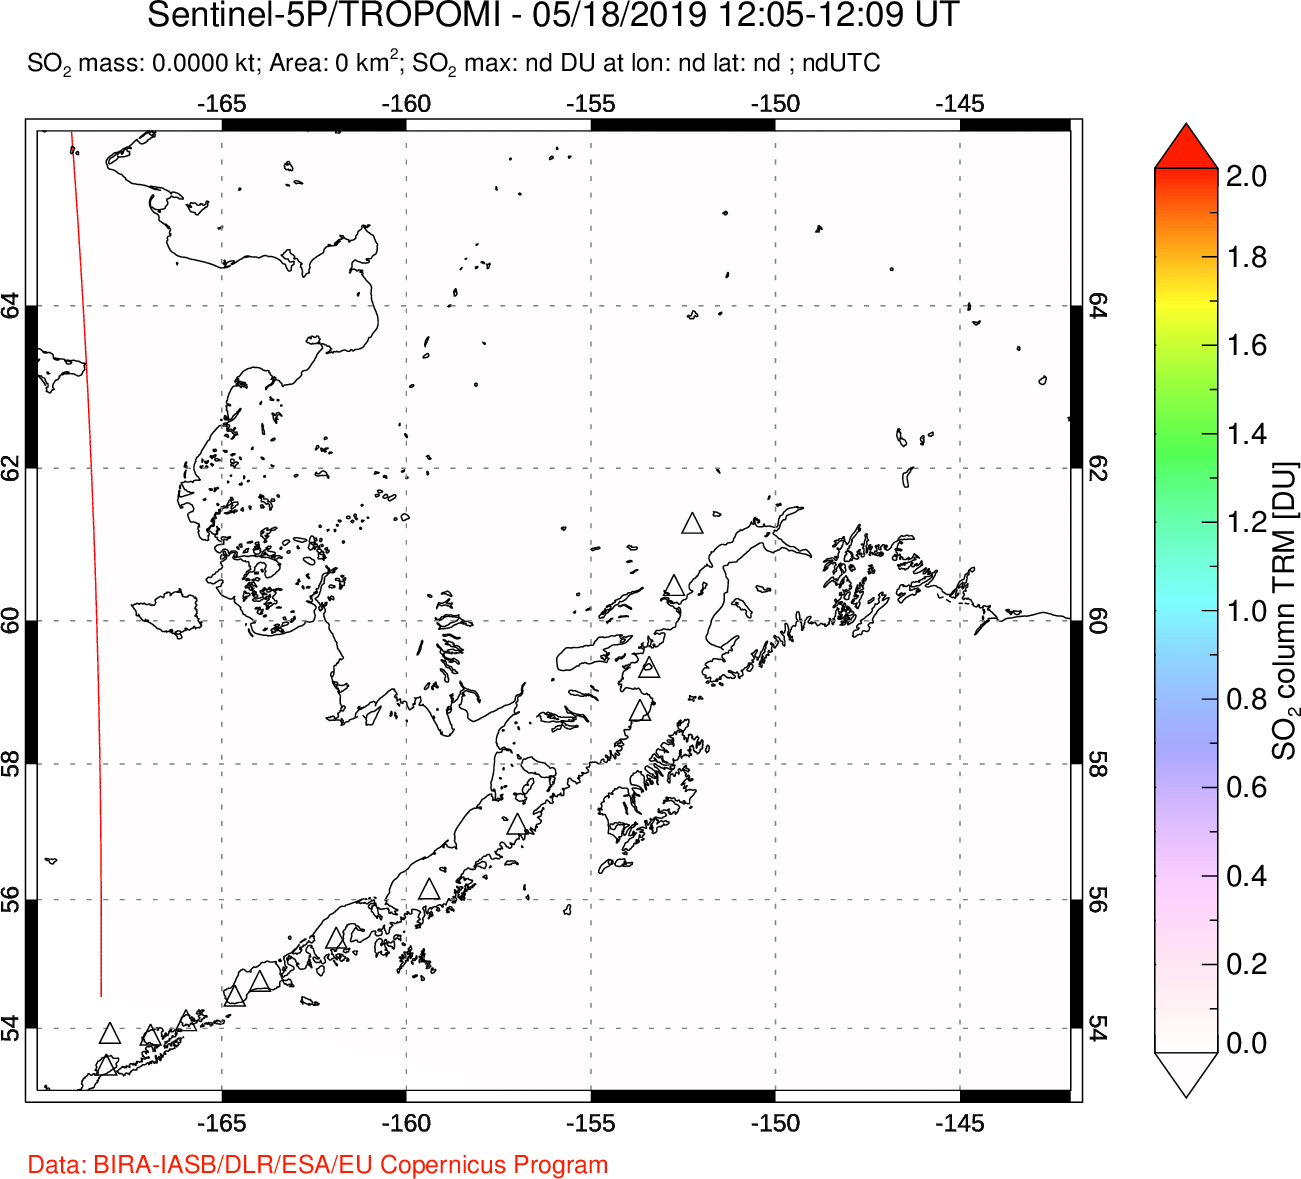 A sulfur dioxide image over Alaska, USA on May 18, 2019.